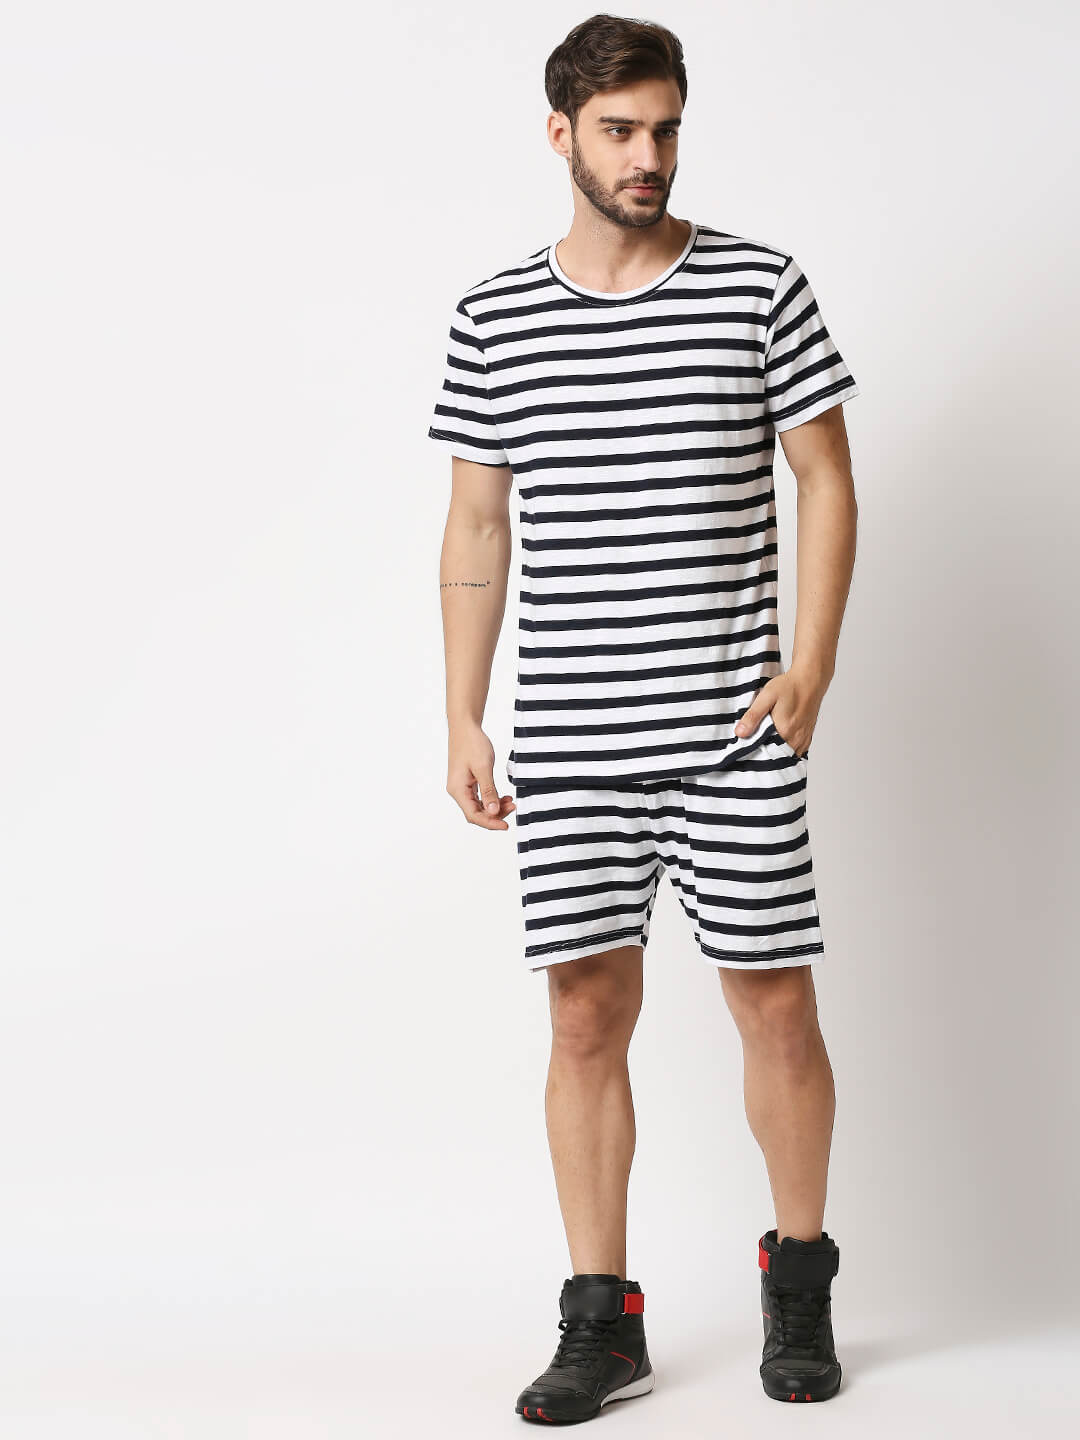 The Manaca Men Stripe Tee with Shorts - White & Black